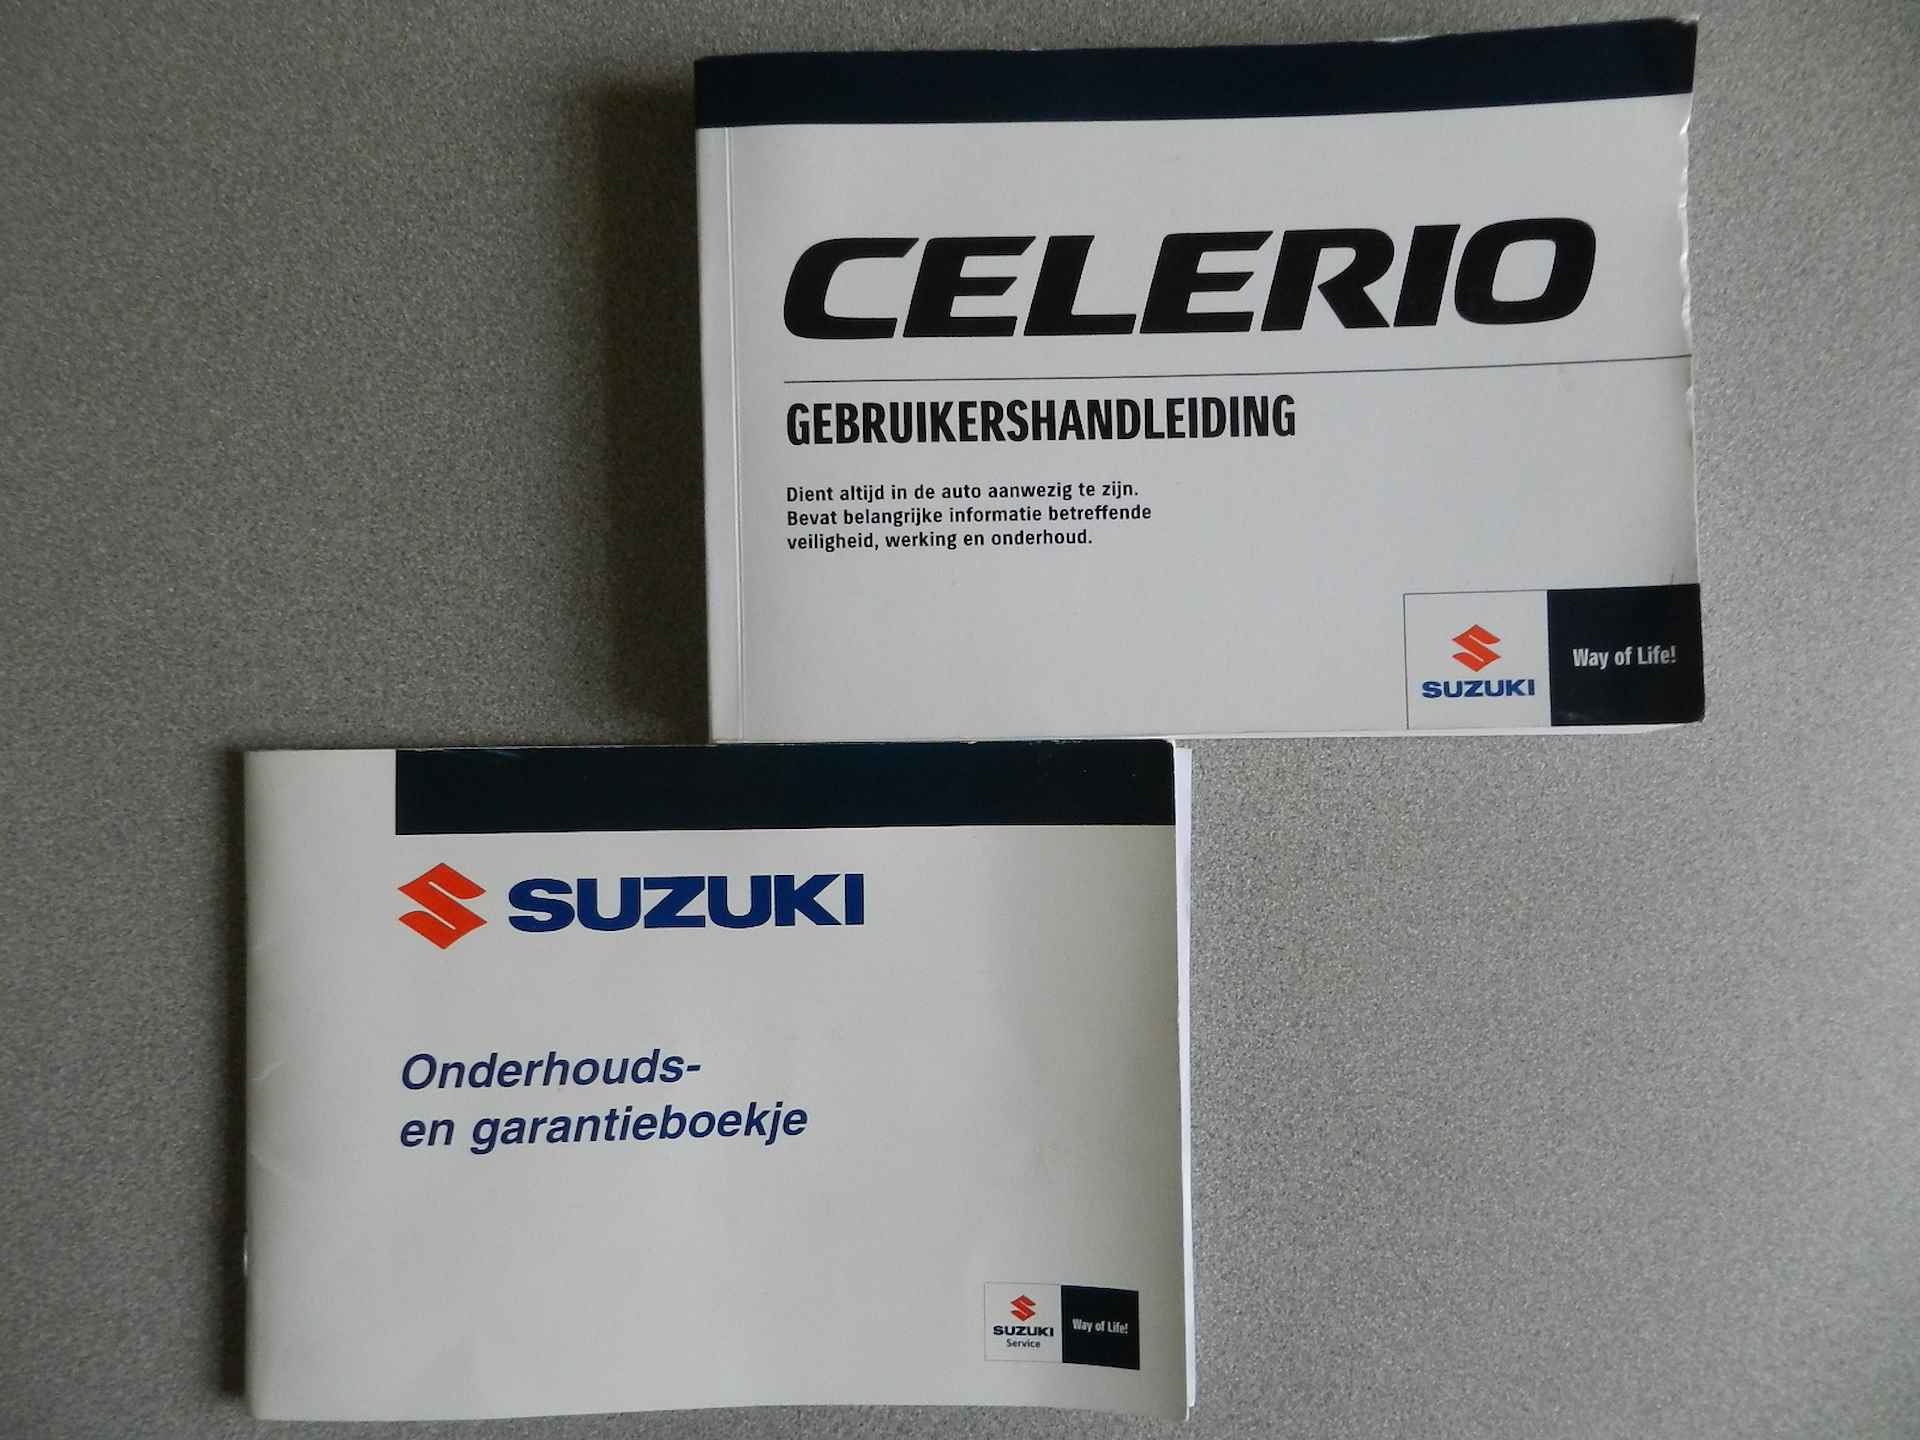 Suzuki Celerio 1.0 5Deurs Comfort Airco CV afst Metallic lak Isofix - 29/34